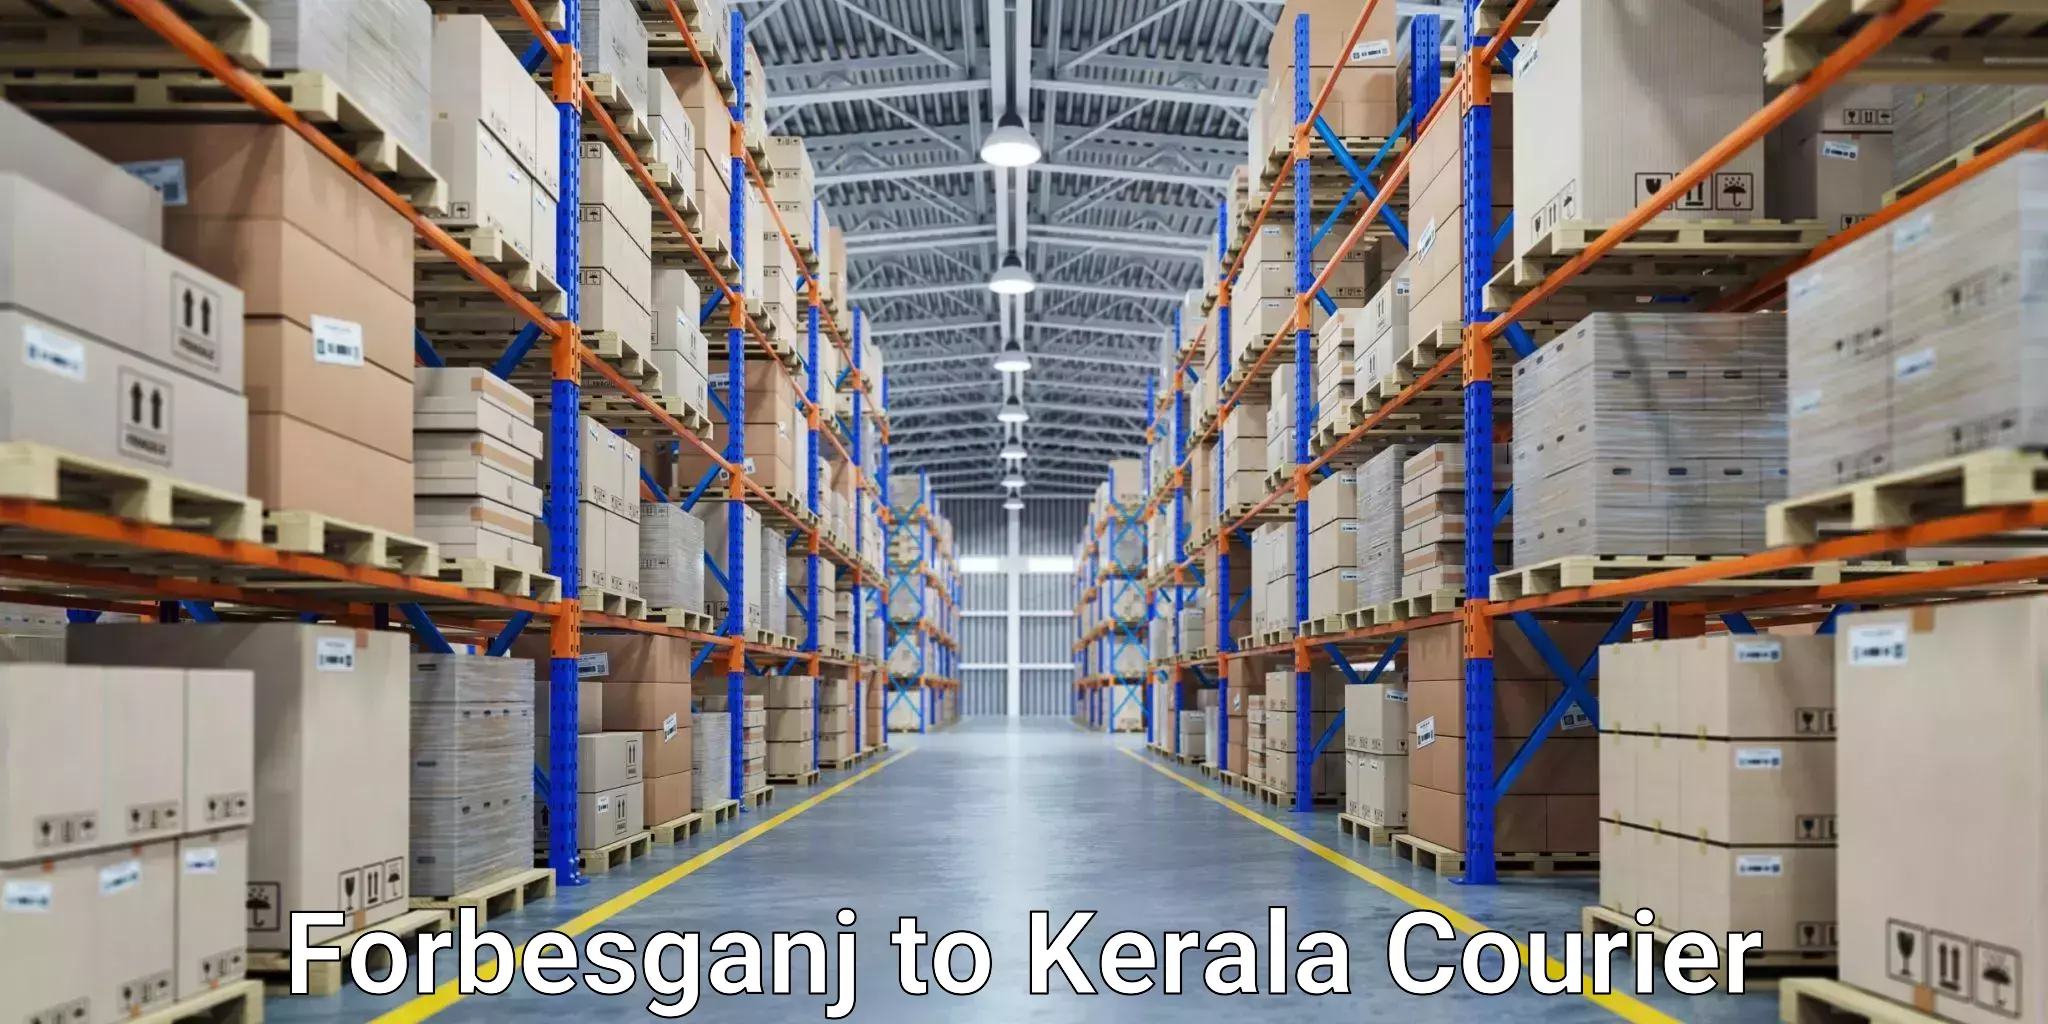 Courier service comparison Forbesganj to Kollam